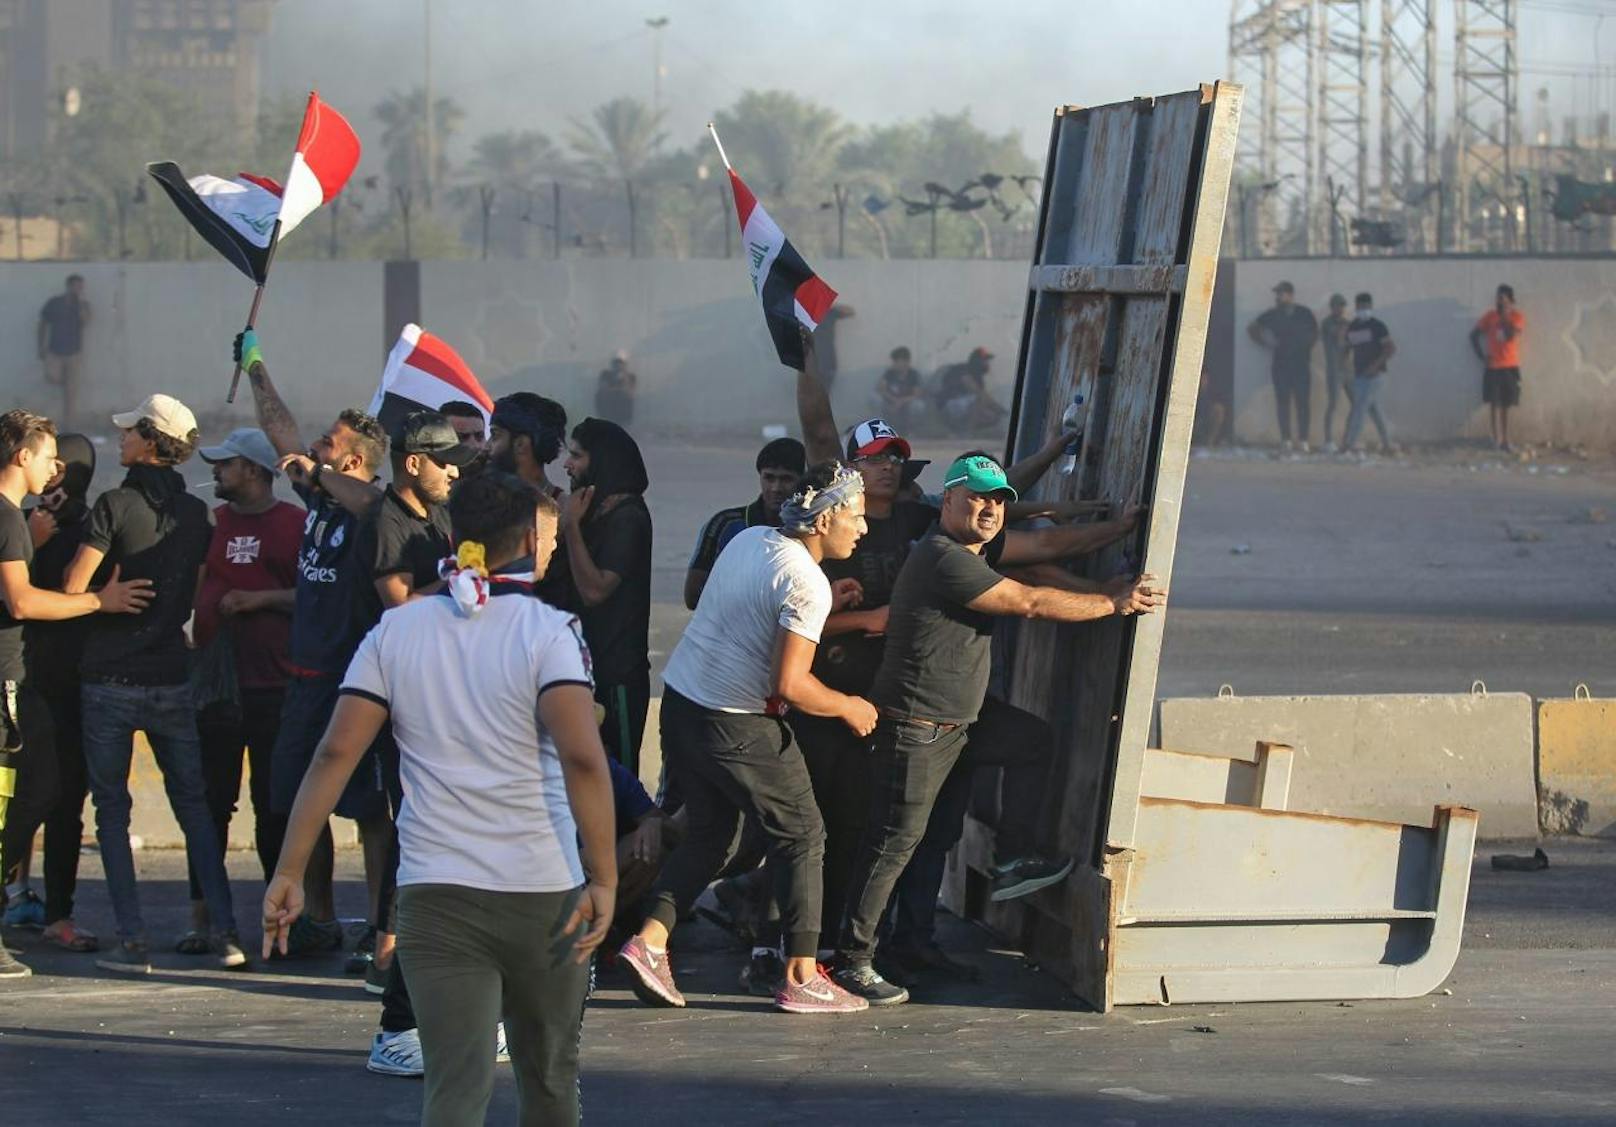 Sicherheitskräfte gingen mit Tränengas und Schüssen gegen die Demonstranten vor. Mehr als 90 Menschen starben.